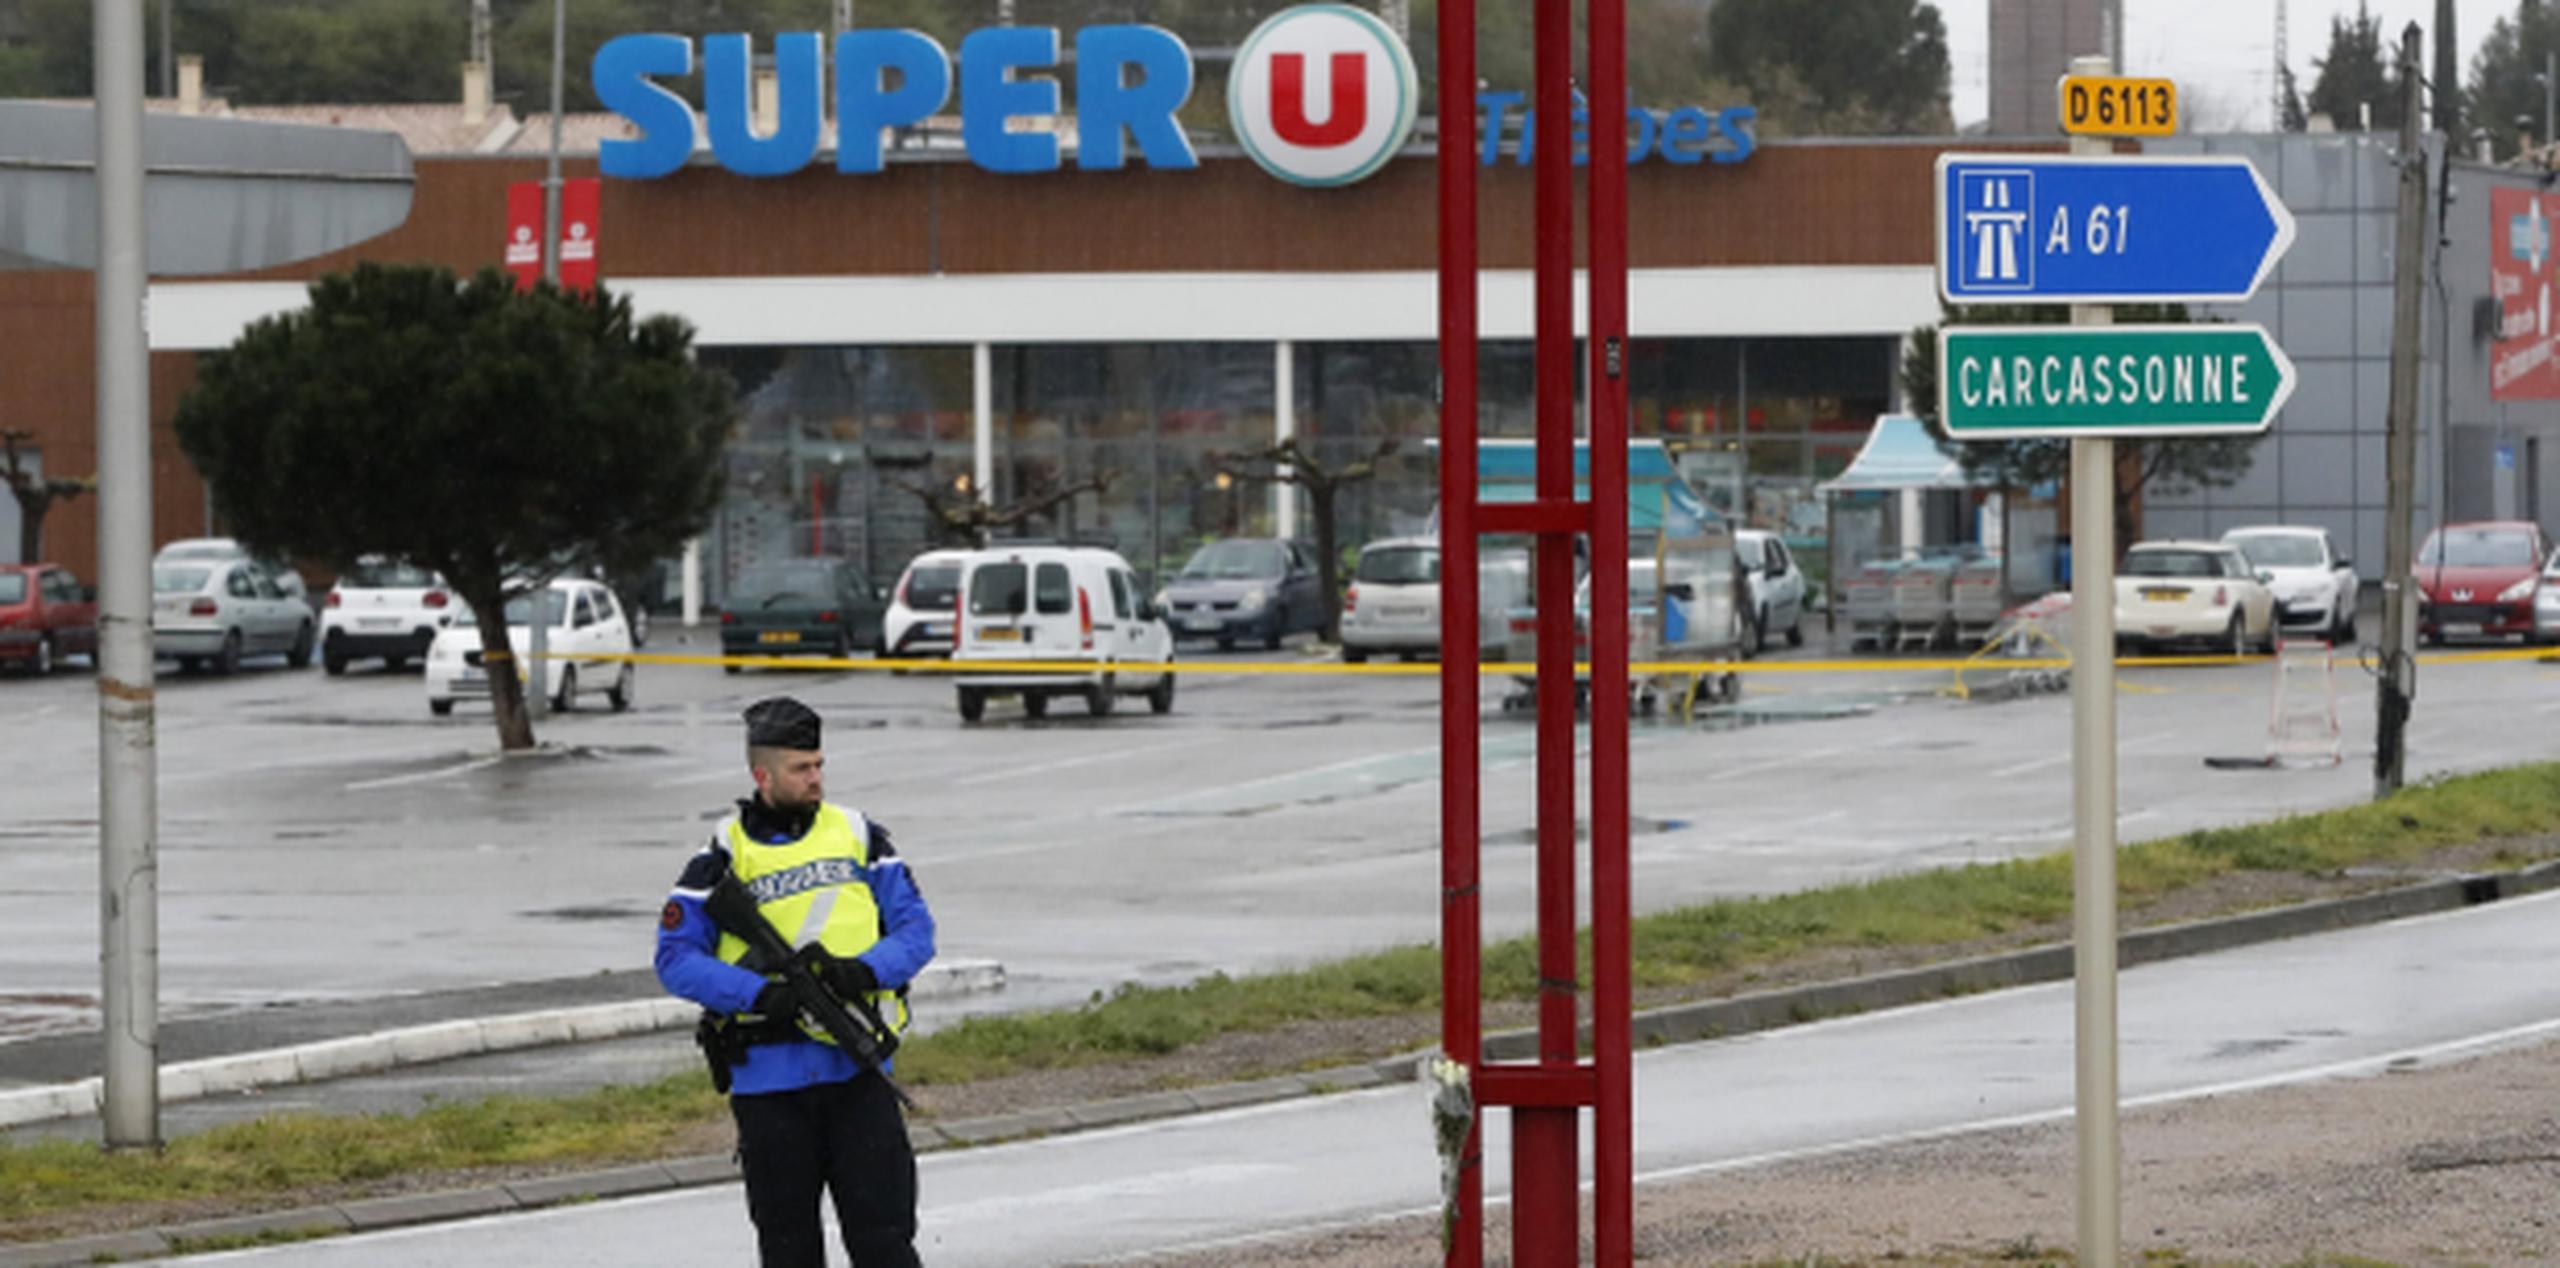 El supermercado en Trebes fue el sitio de un ataque de horas e viernes que mató a cuatro personas. (AP)